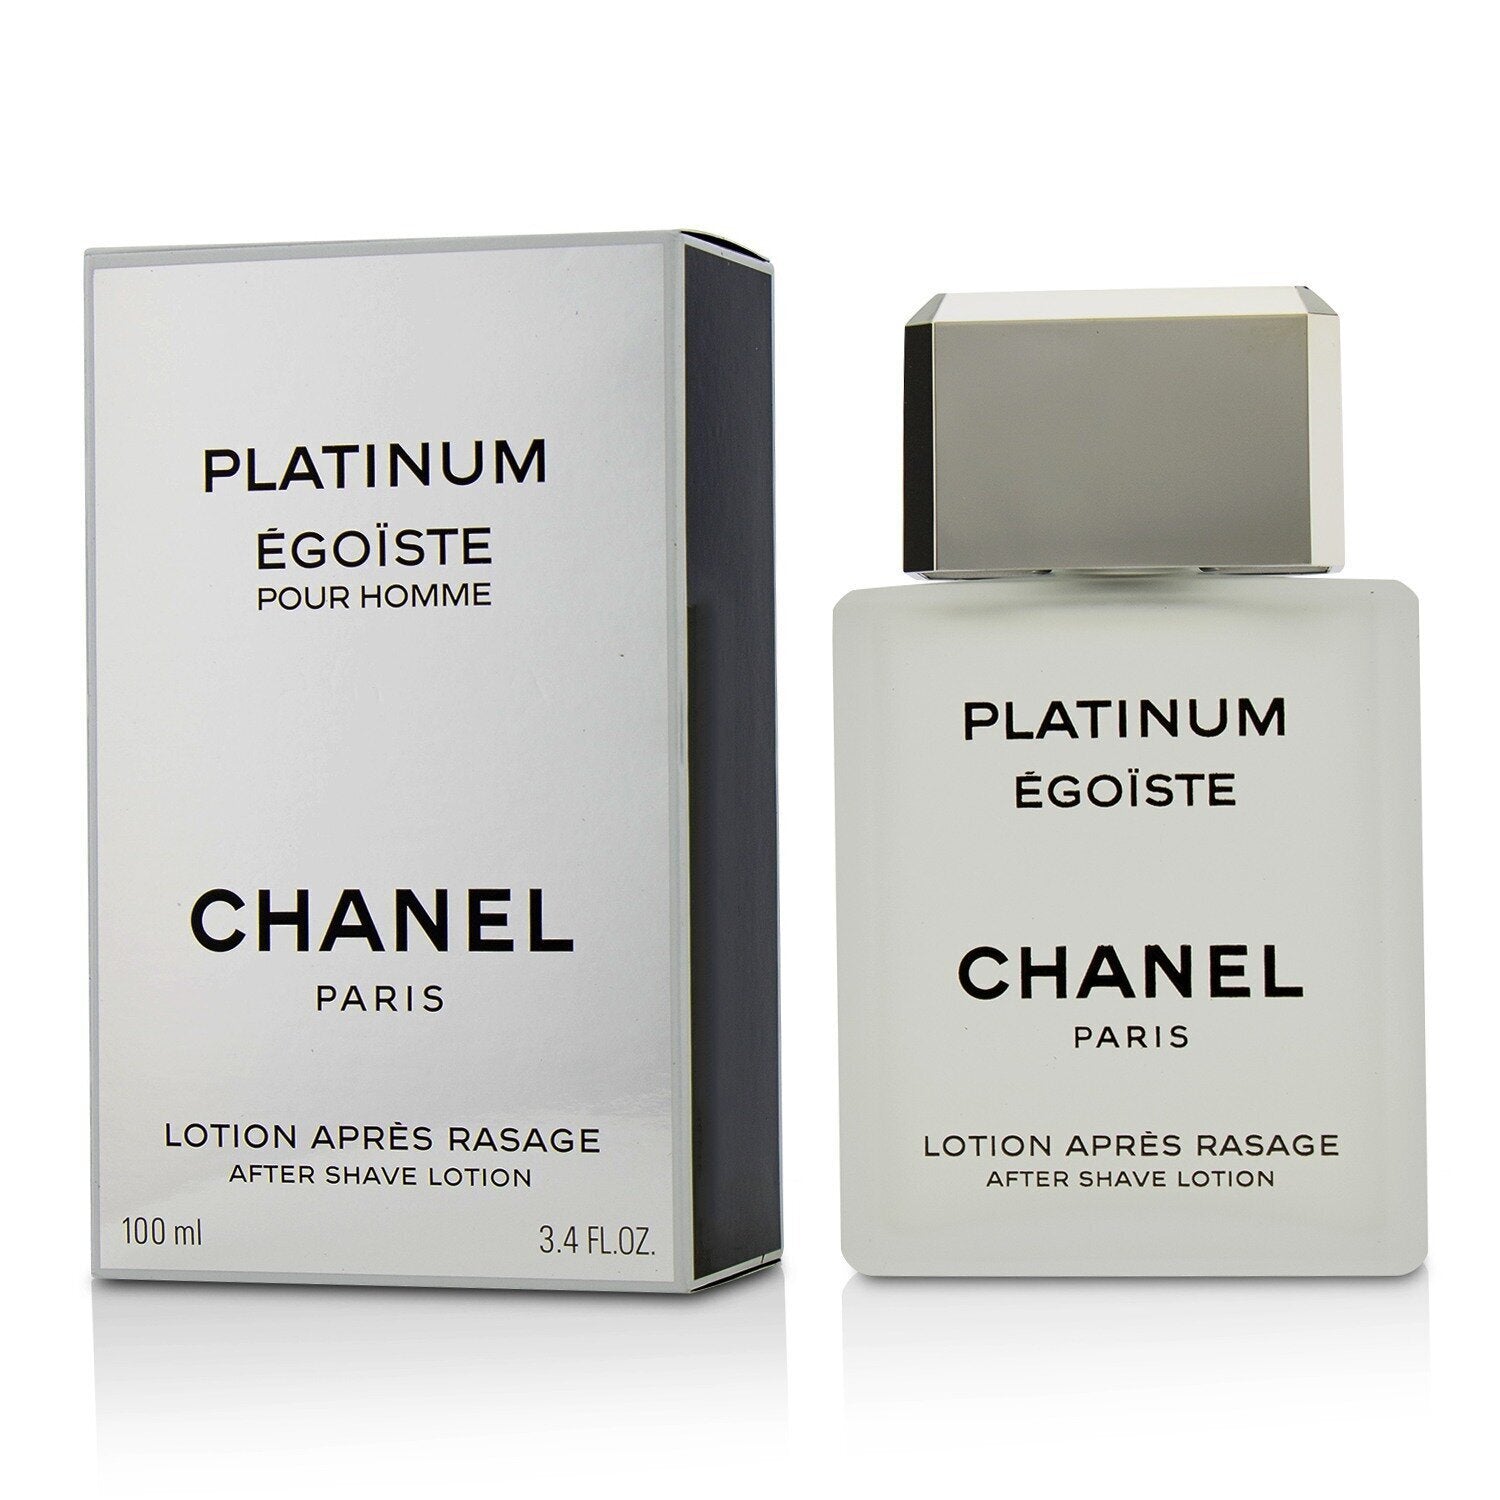 Chanel Egoiste Platinum Eau De Toilette Spray 100ml